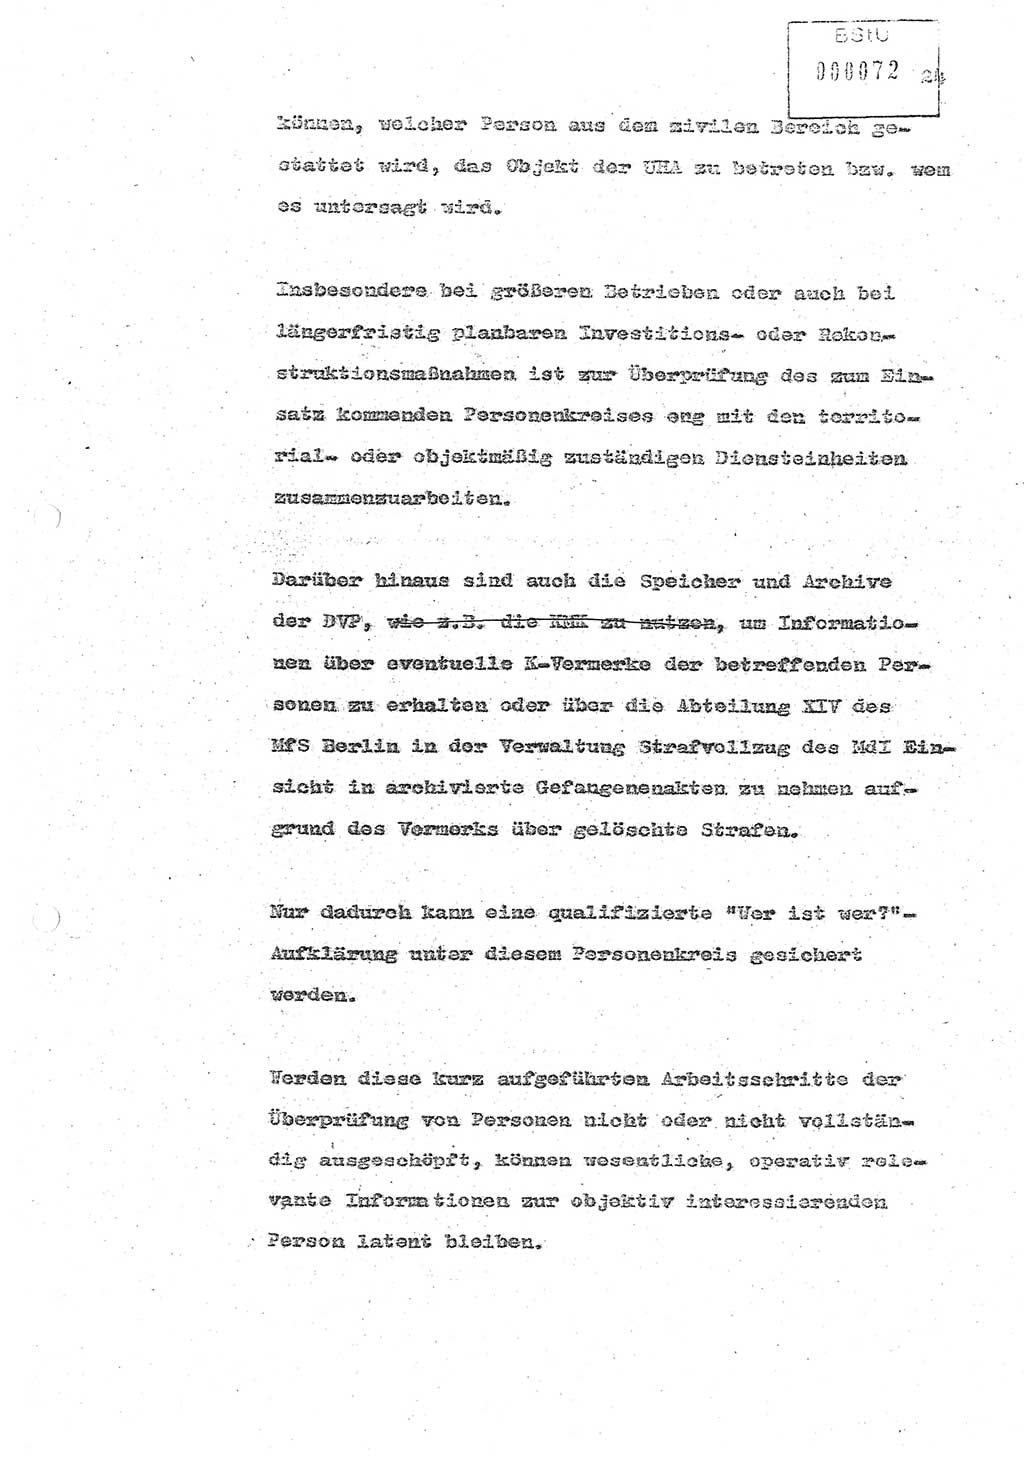 Referat (Oberst Siegfried Rataizick) zur Dienstkonferenz der Abteilung ⅩⅣ des MfS Berlin [Ministerium für Staatssicherheit, Deutsche Demokratische Republik (DDR)] Berlin-Hohenschönhausen vom 5.3.1986 bis 6.3.1986, Abteilung XIV, Berlin, 20.2.1986, Seite 24 (Ref. Di.-Konf. Abt. ⅩⅣ MfS DDR Bln. 1986, S. 24)